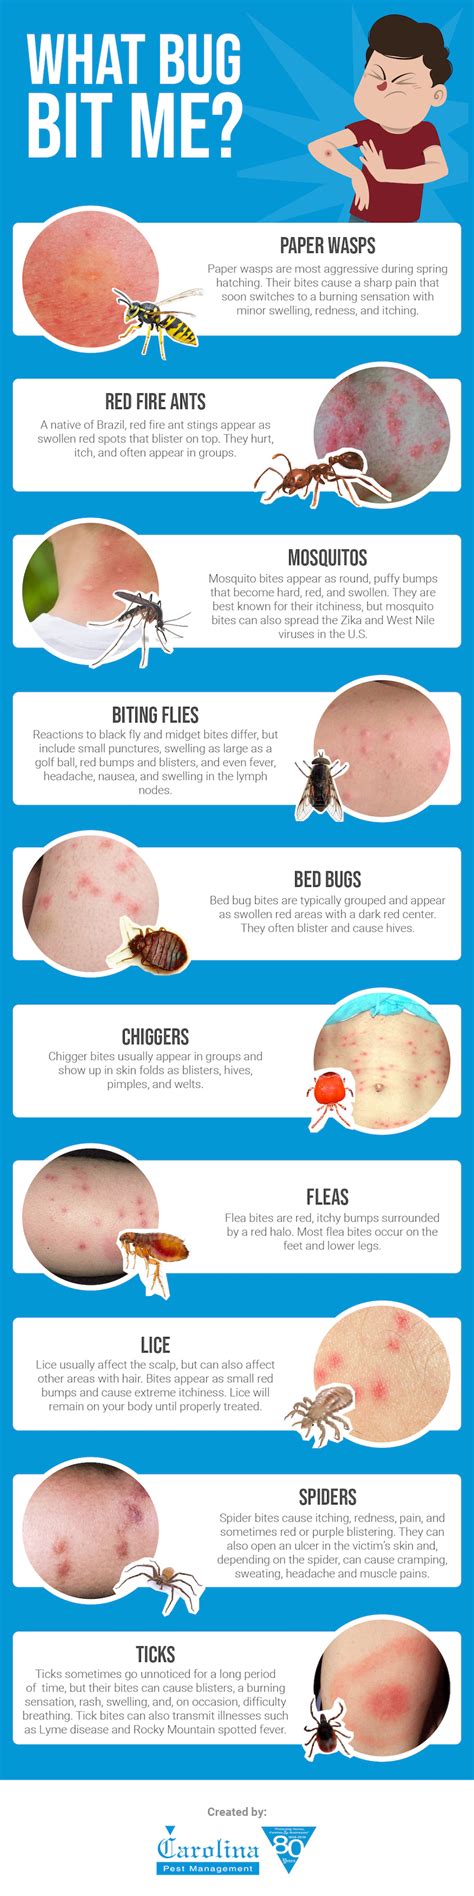 What Bug Bit Me Carolina Insect Control Tips Carolina Pest Bed Bug